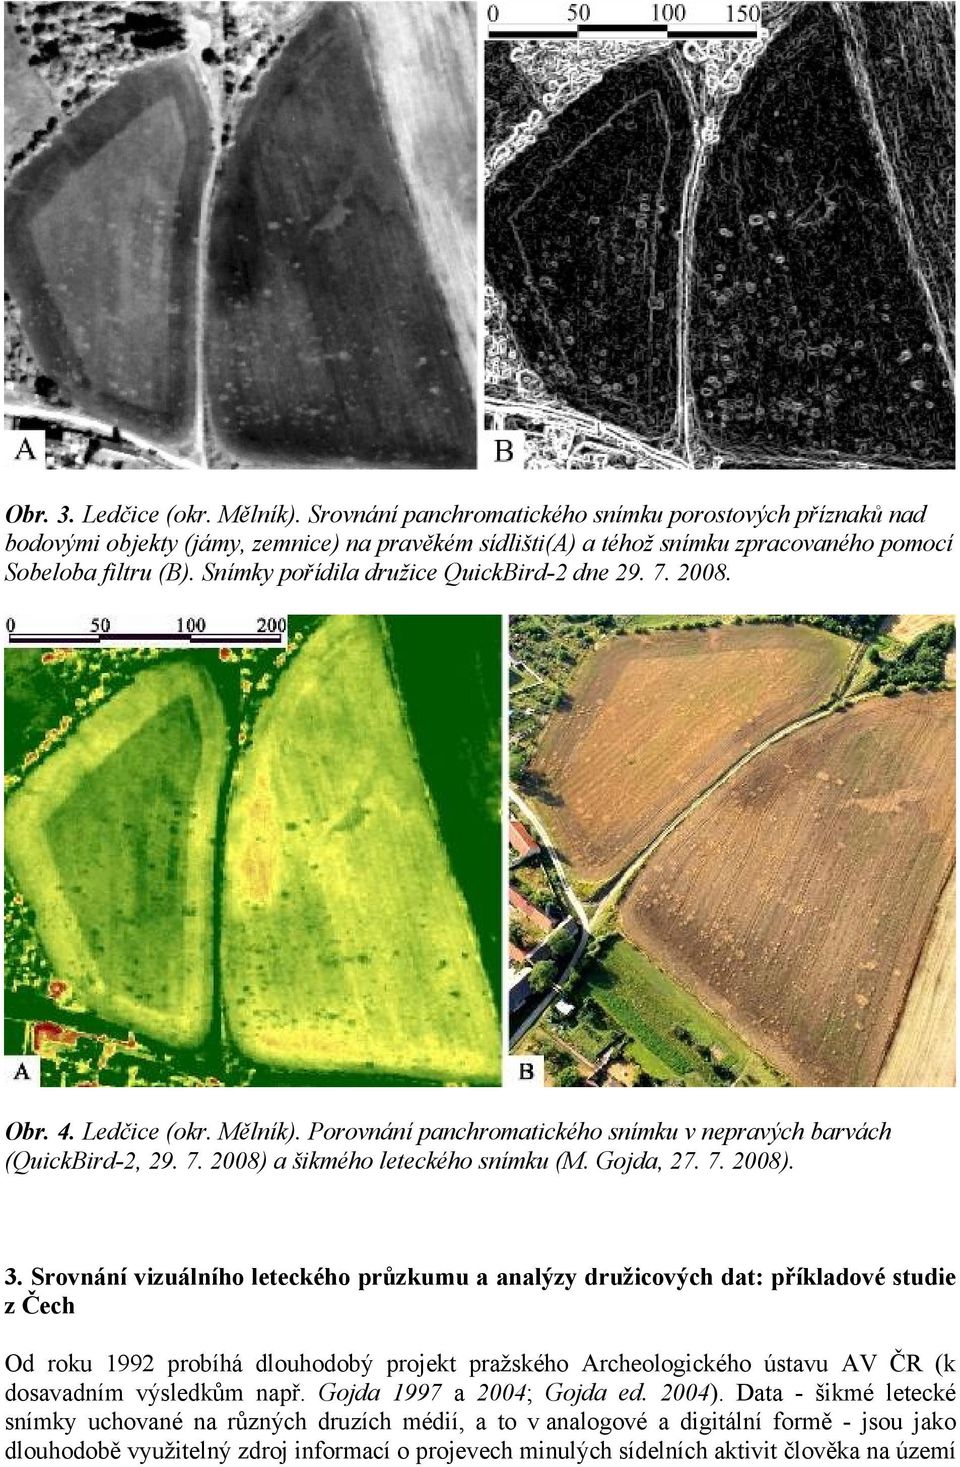 Snímky pořídila družice QuickBird-2 dne 29. 7. 2008. Obr. 4. Ledčice (okr. Mělník). Porovnání panchromatického snímku v nepravých barvách (QuickBird-2, 29. 7. 2008) a šikmého leteckého snímku (M.